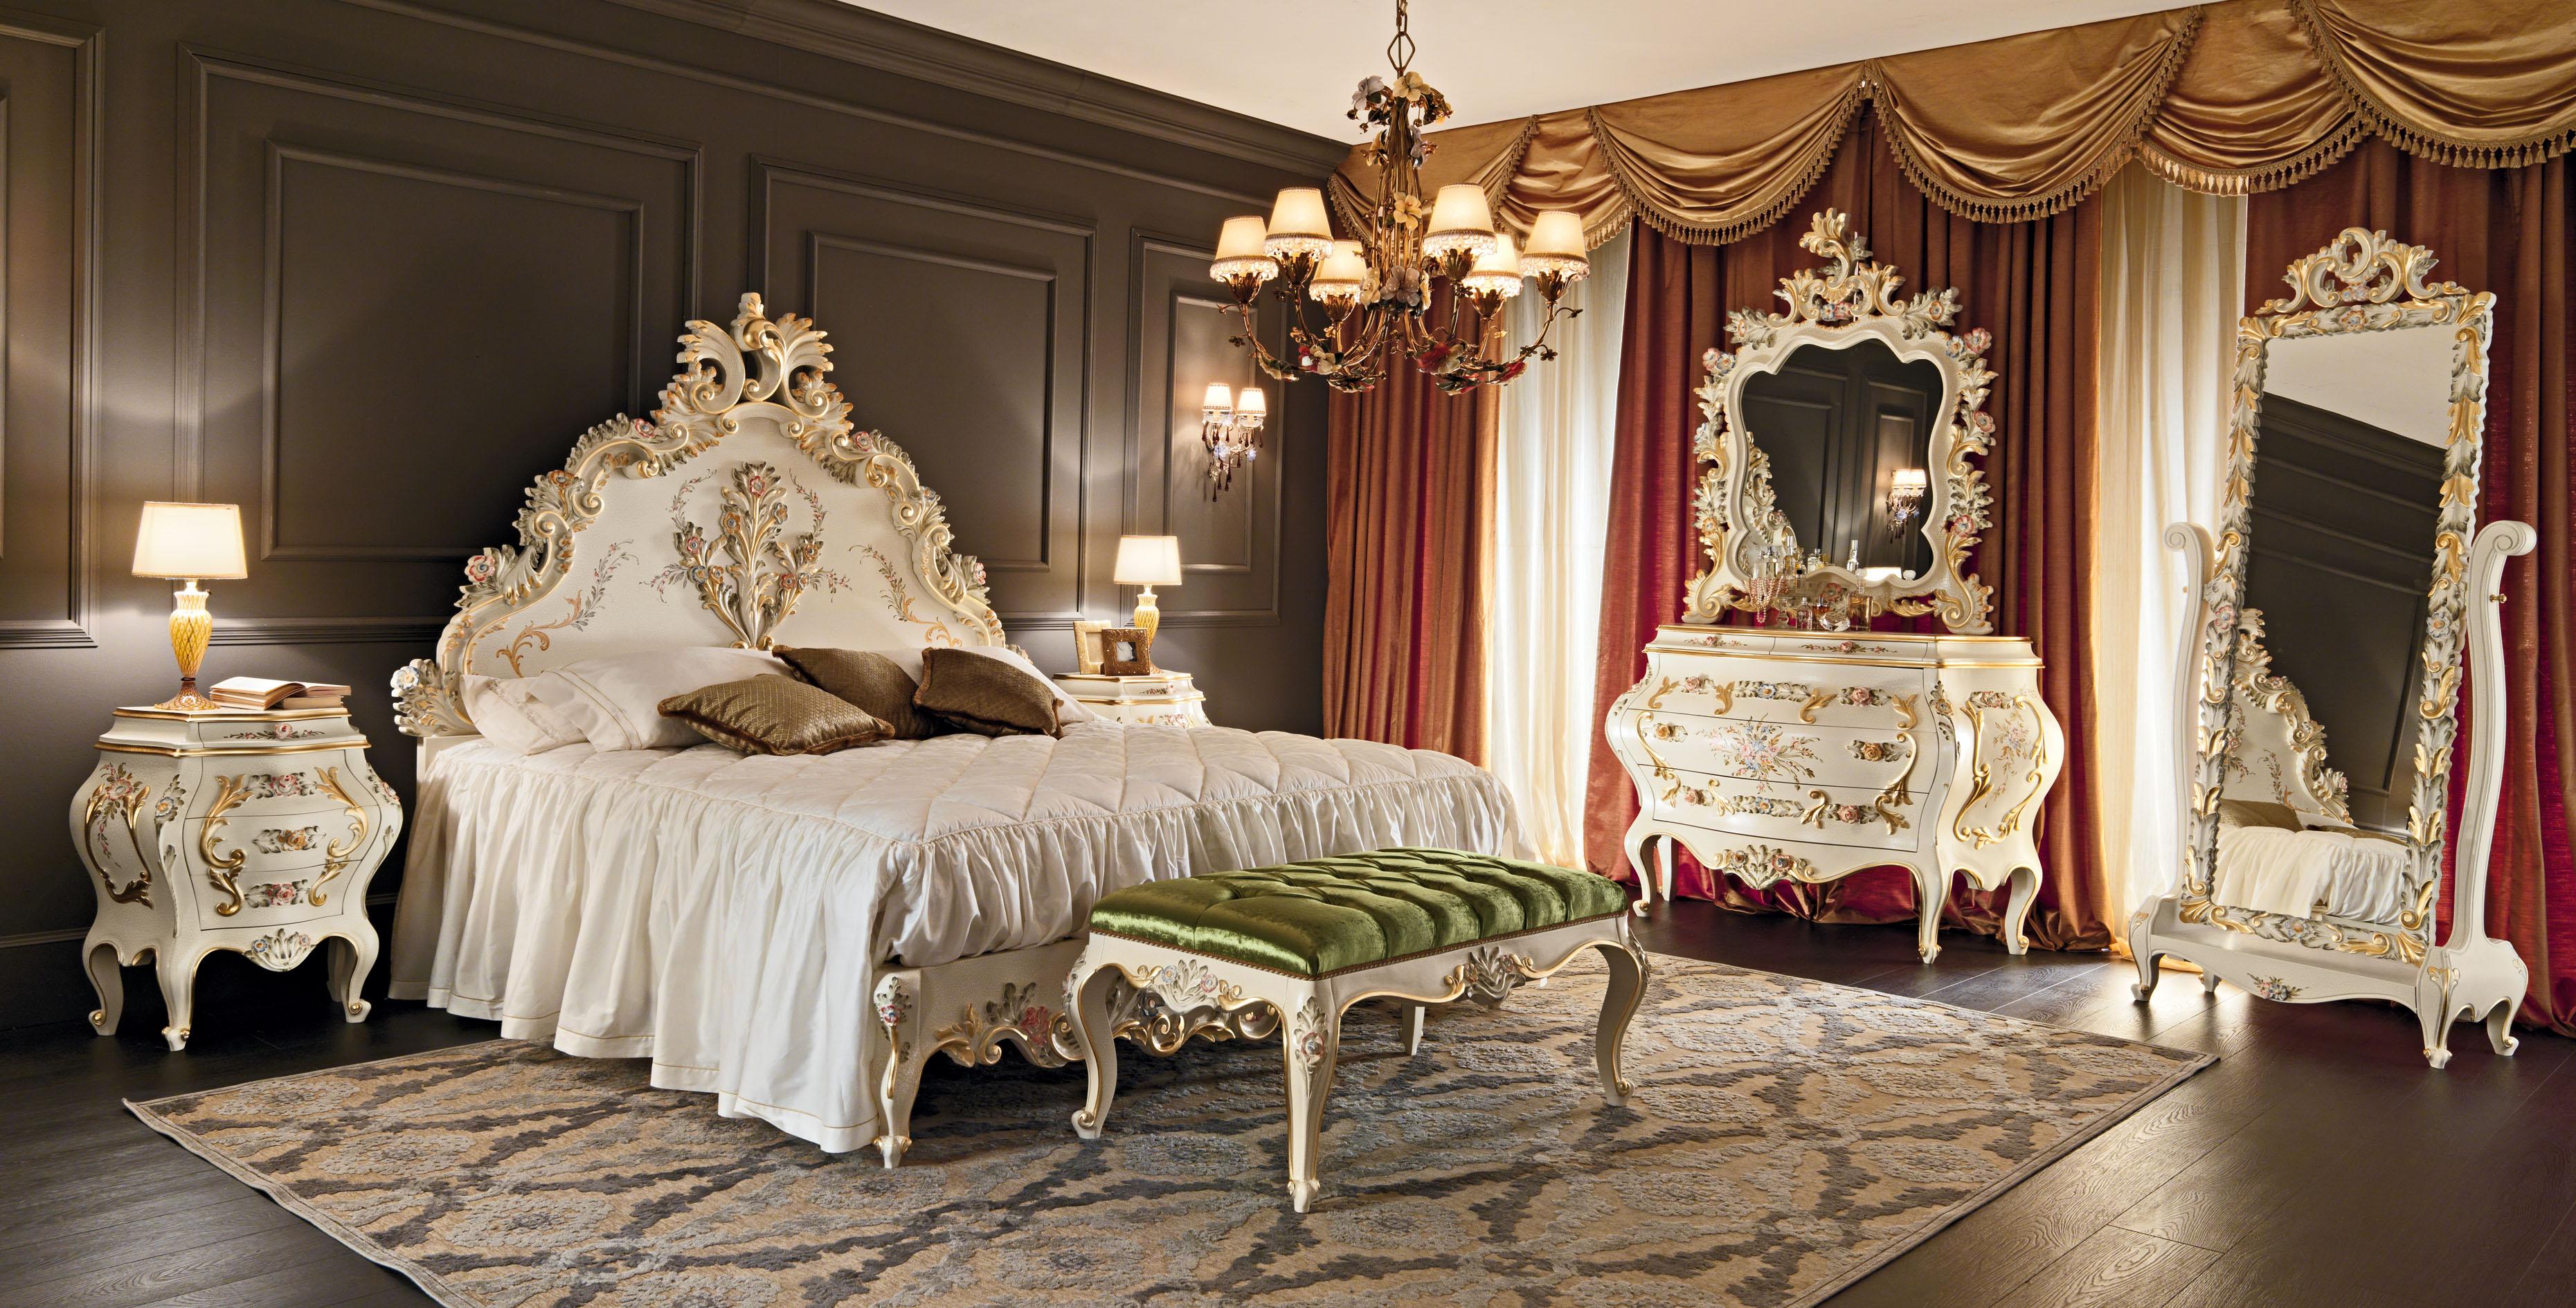 Diese überraschend geschnitzte barocke Bettbank von Modenese Luxury Interiors, einem italienischen Möbelhersteller in der Nähe von Venedig, ist ein klassisches, aber modernes Stück für eine luxuriöse Einrichtung, das sich am besten in Schlafzimmern,